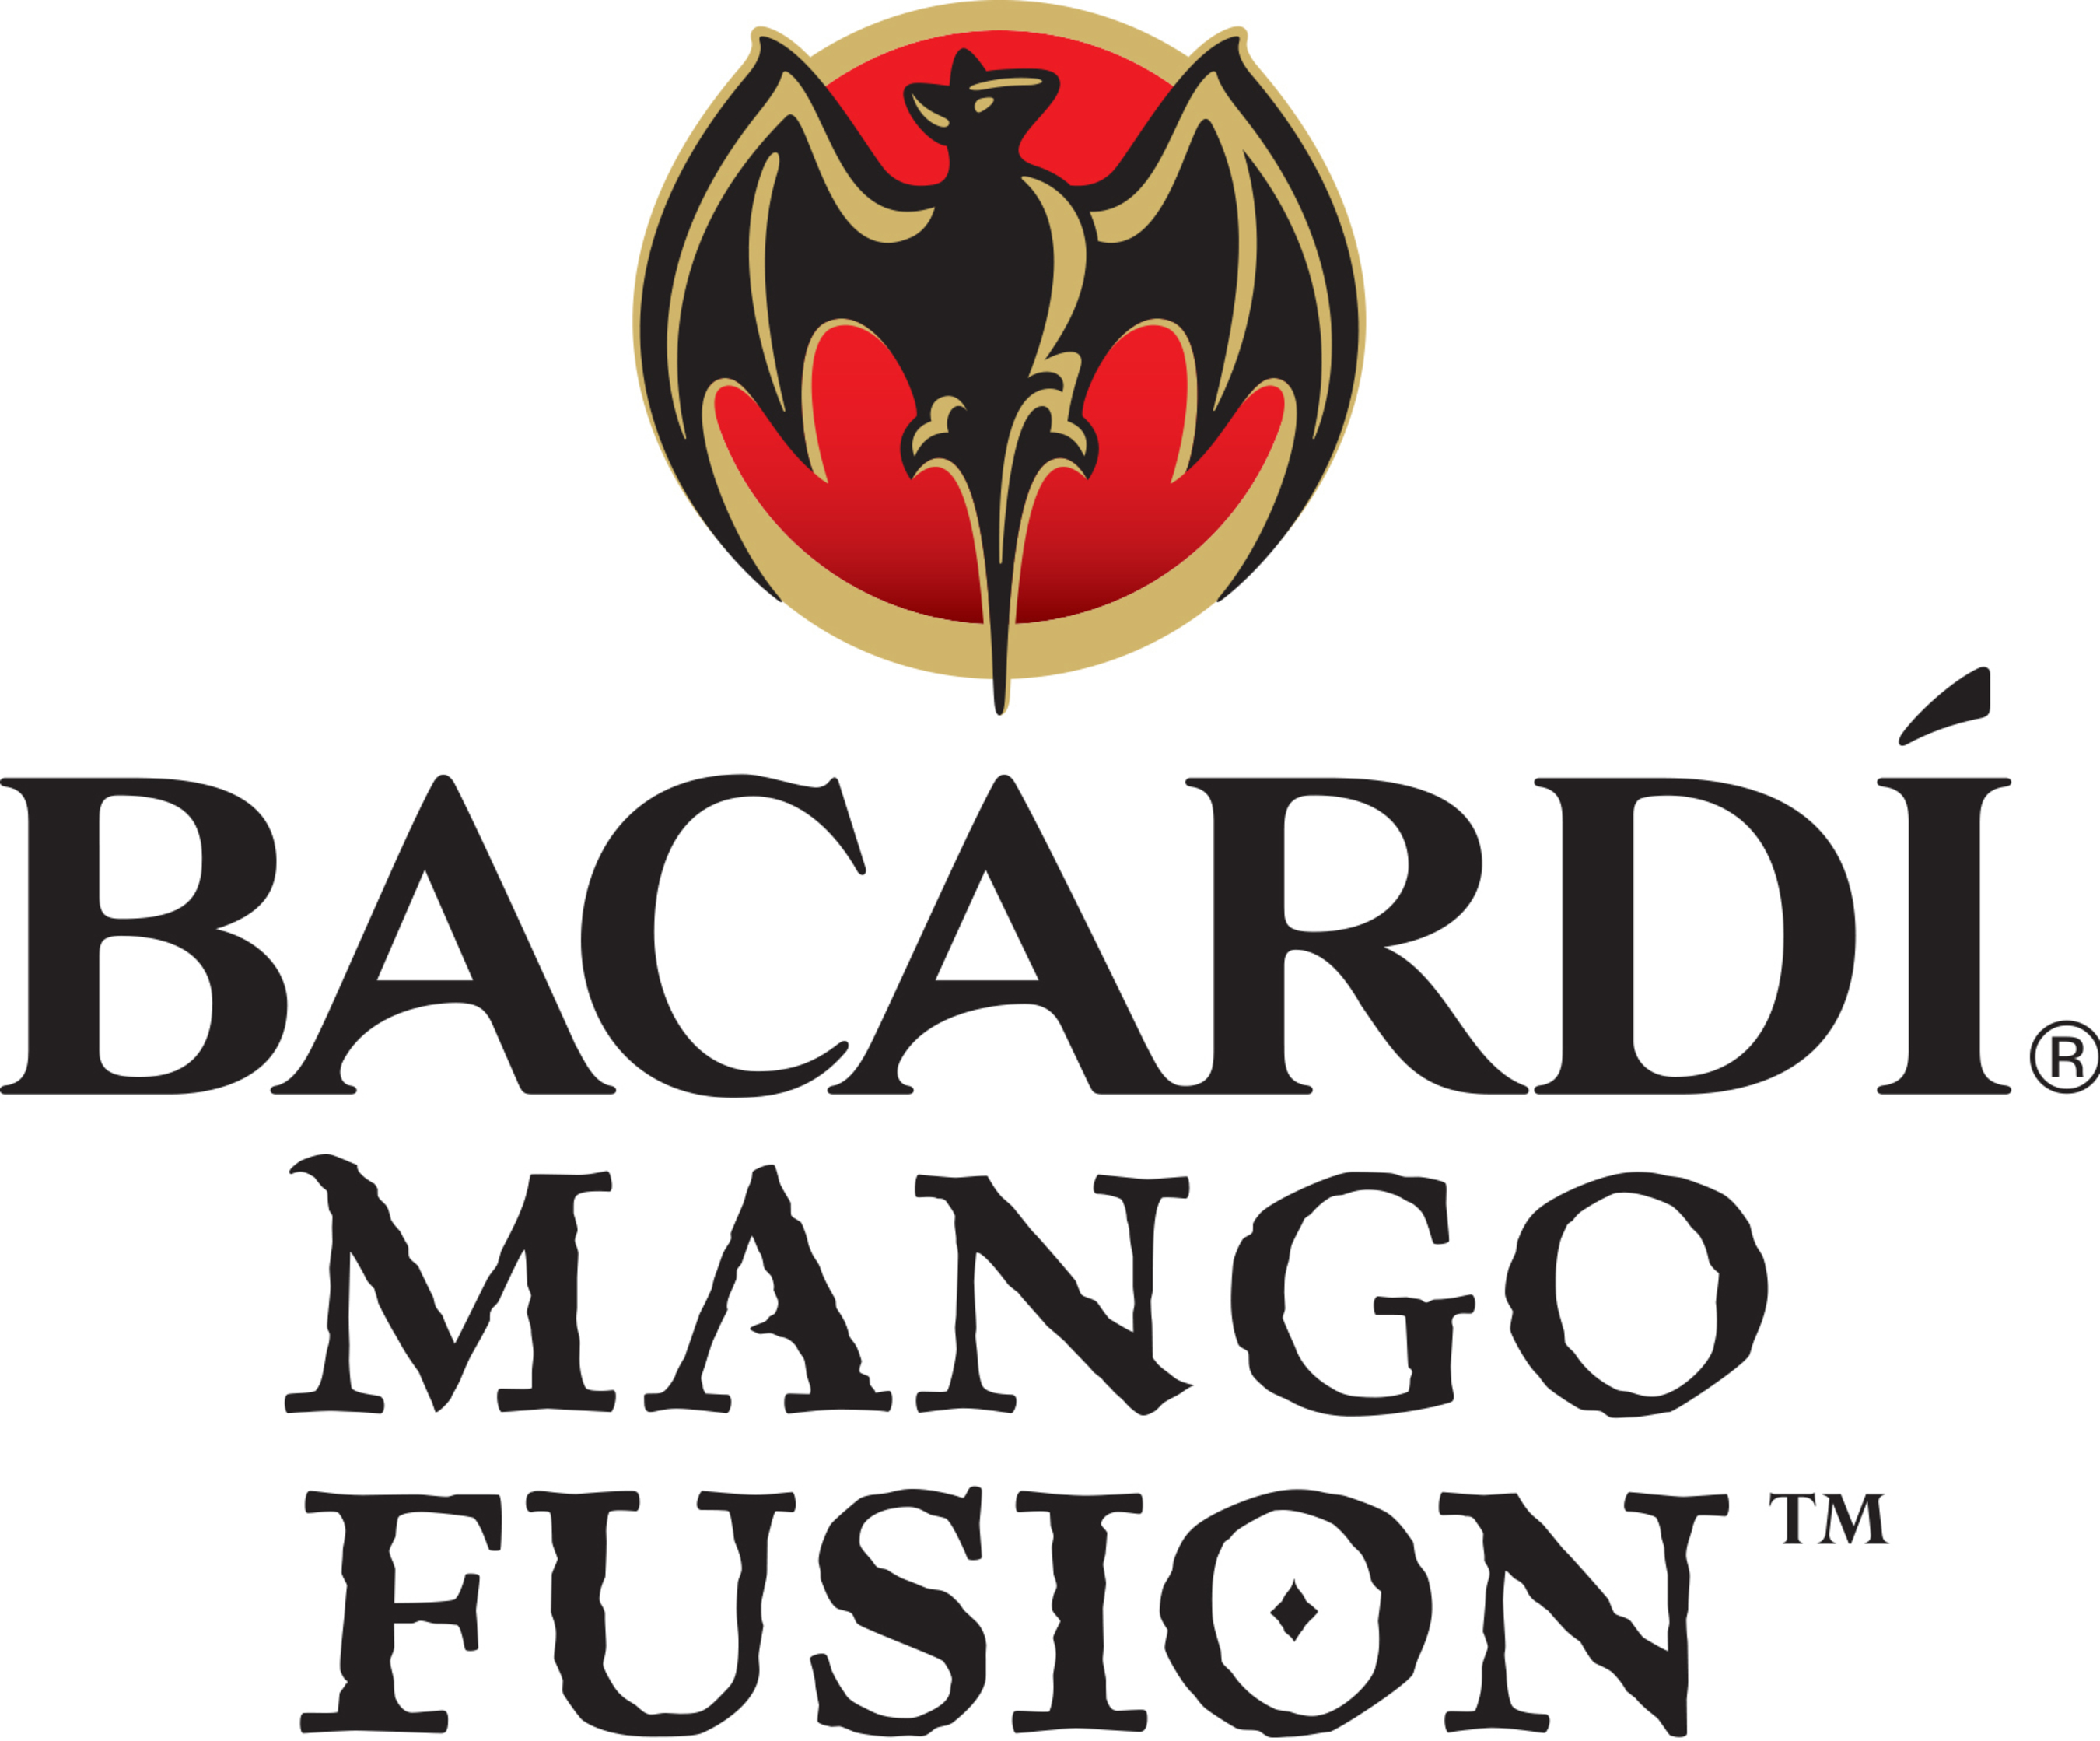 BACARDI(R) Mango Fusion  (PRNewsFoto/Bacardi U.S.A., Inc.)